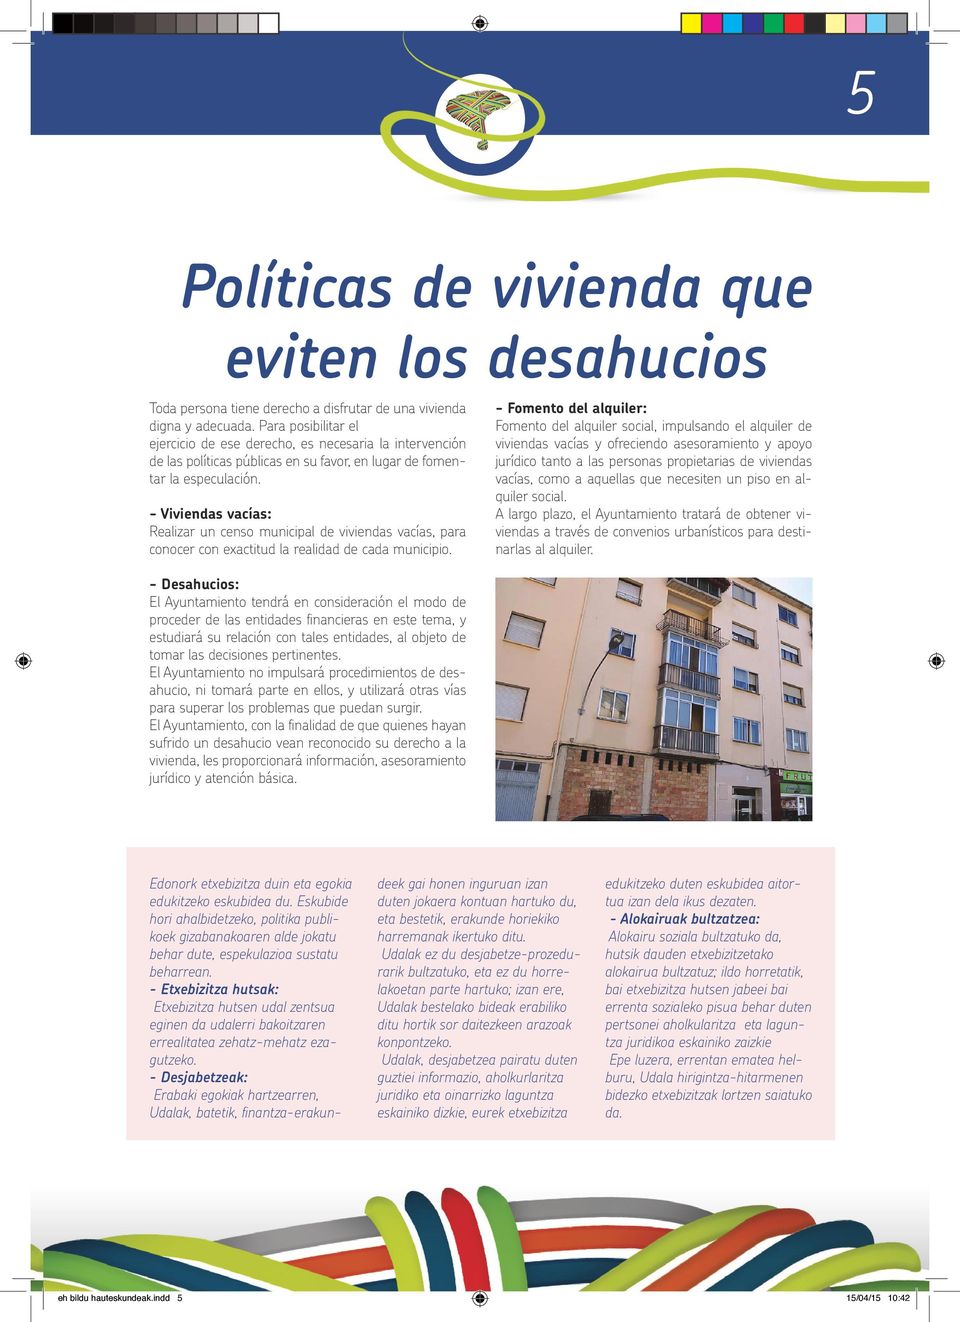 - Viviendas vacías: Realizar un censo municipal de viviendas vacías, para conocer con exactitud la realidad de cada municipio.